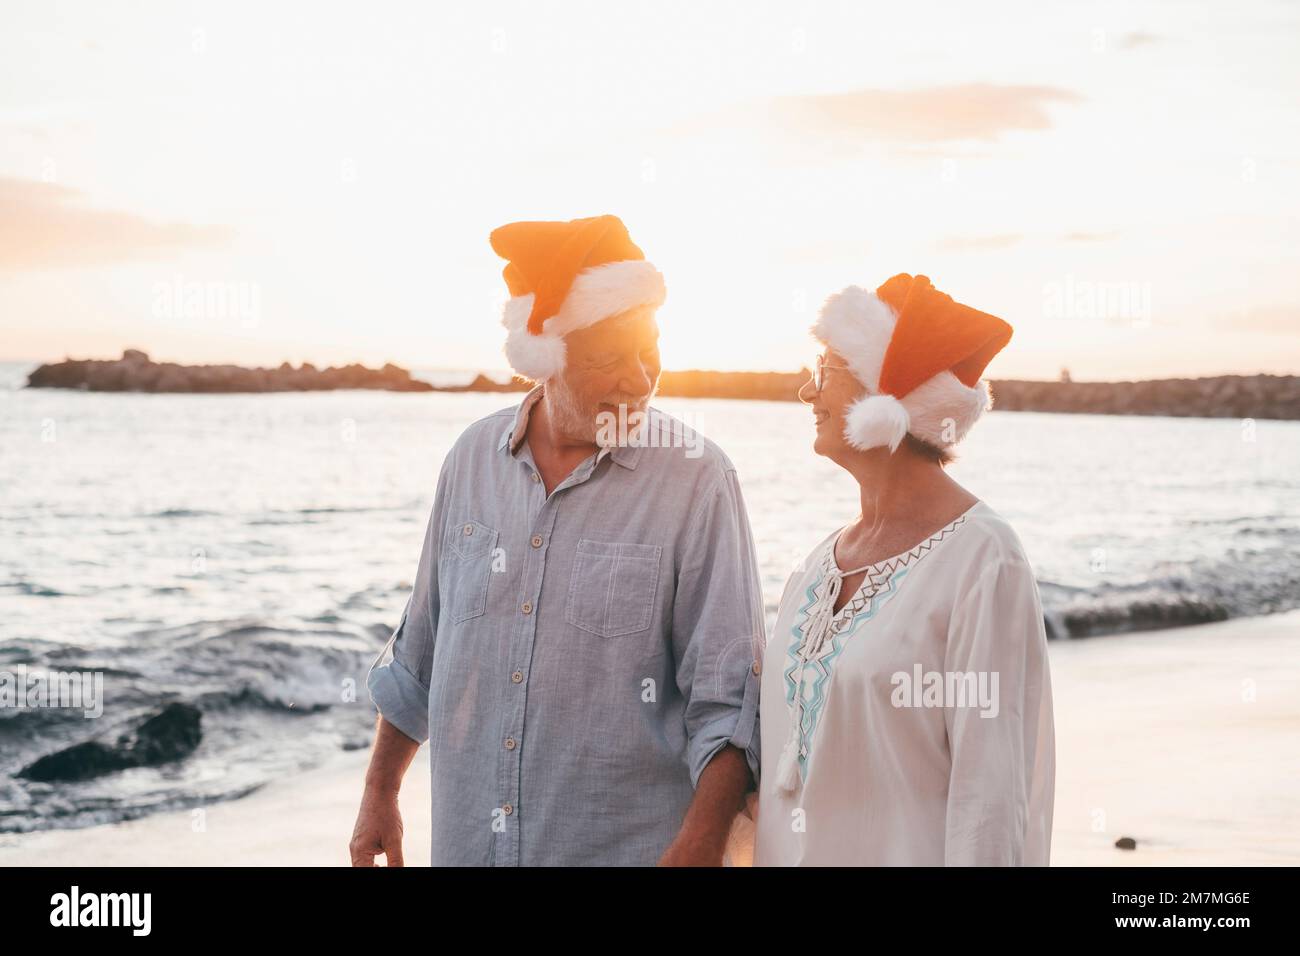 Ein altes, süßes Paar reifer Leute, die sich am Strand amüsieren und Spaß miteinander haben und an Feiertagen Weihnachtshüte tragen. Spaziergang am Strand mit Sonnenuntergang im Hintergrund im Winter. Stockfoto